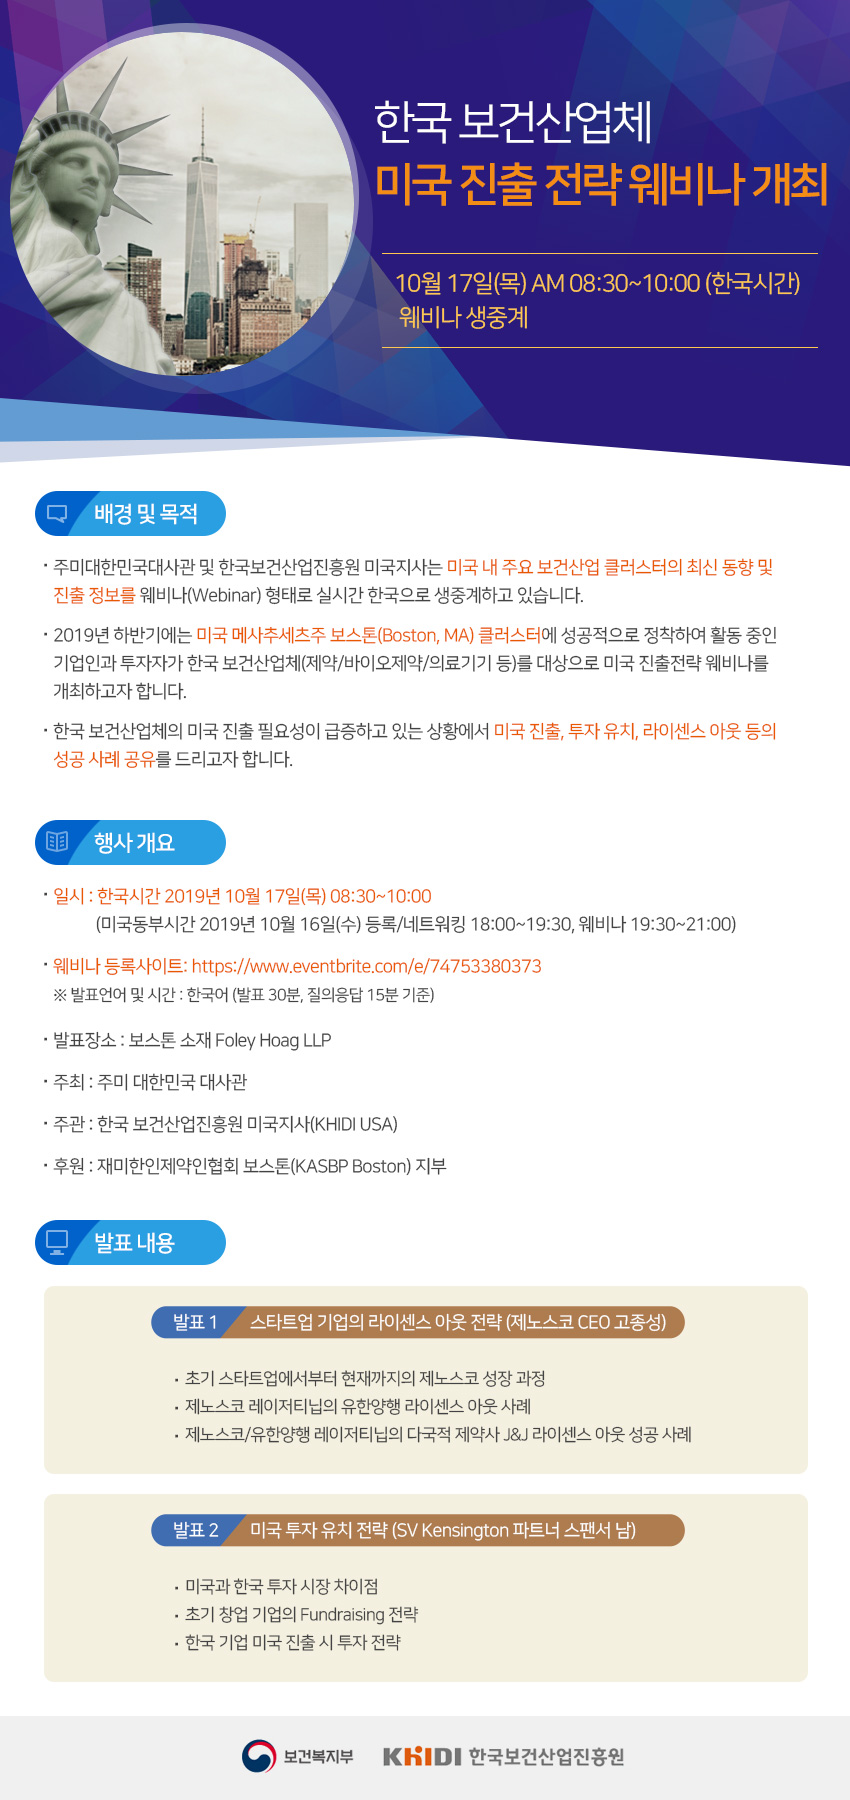 한국보건산업체 미국 진출전략 웨비나 개최 10월 17일(목) AM 08:30~10:00 (한국시간) 웨비나 생중계 - 자세한 사항은 다음의 내용을 참조하세요